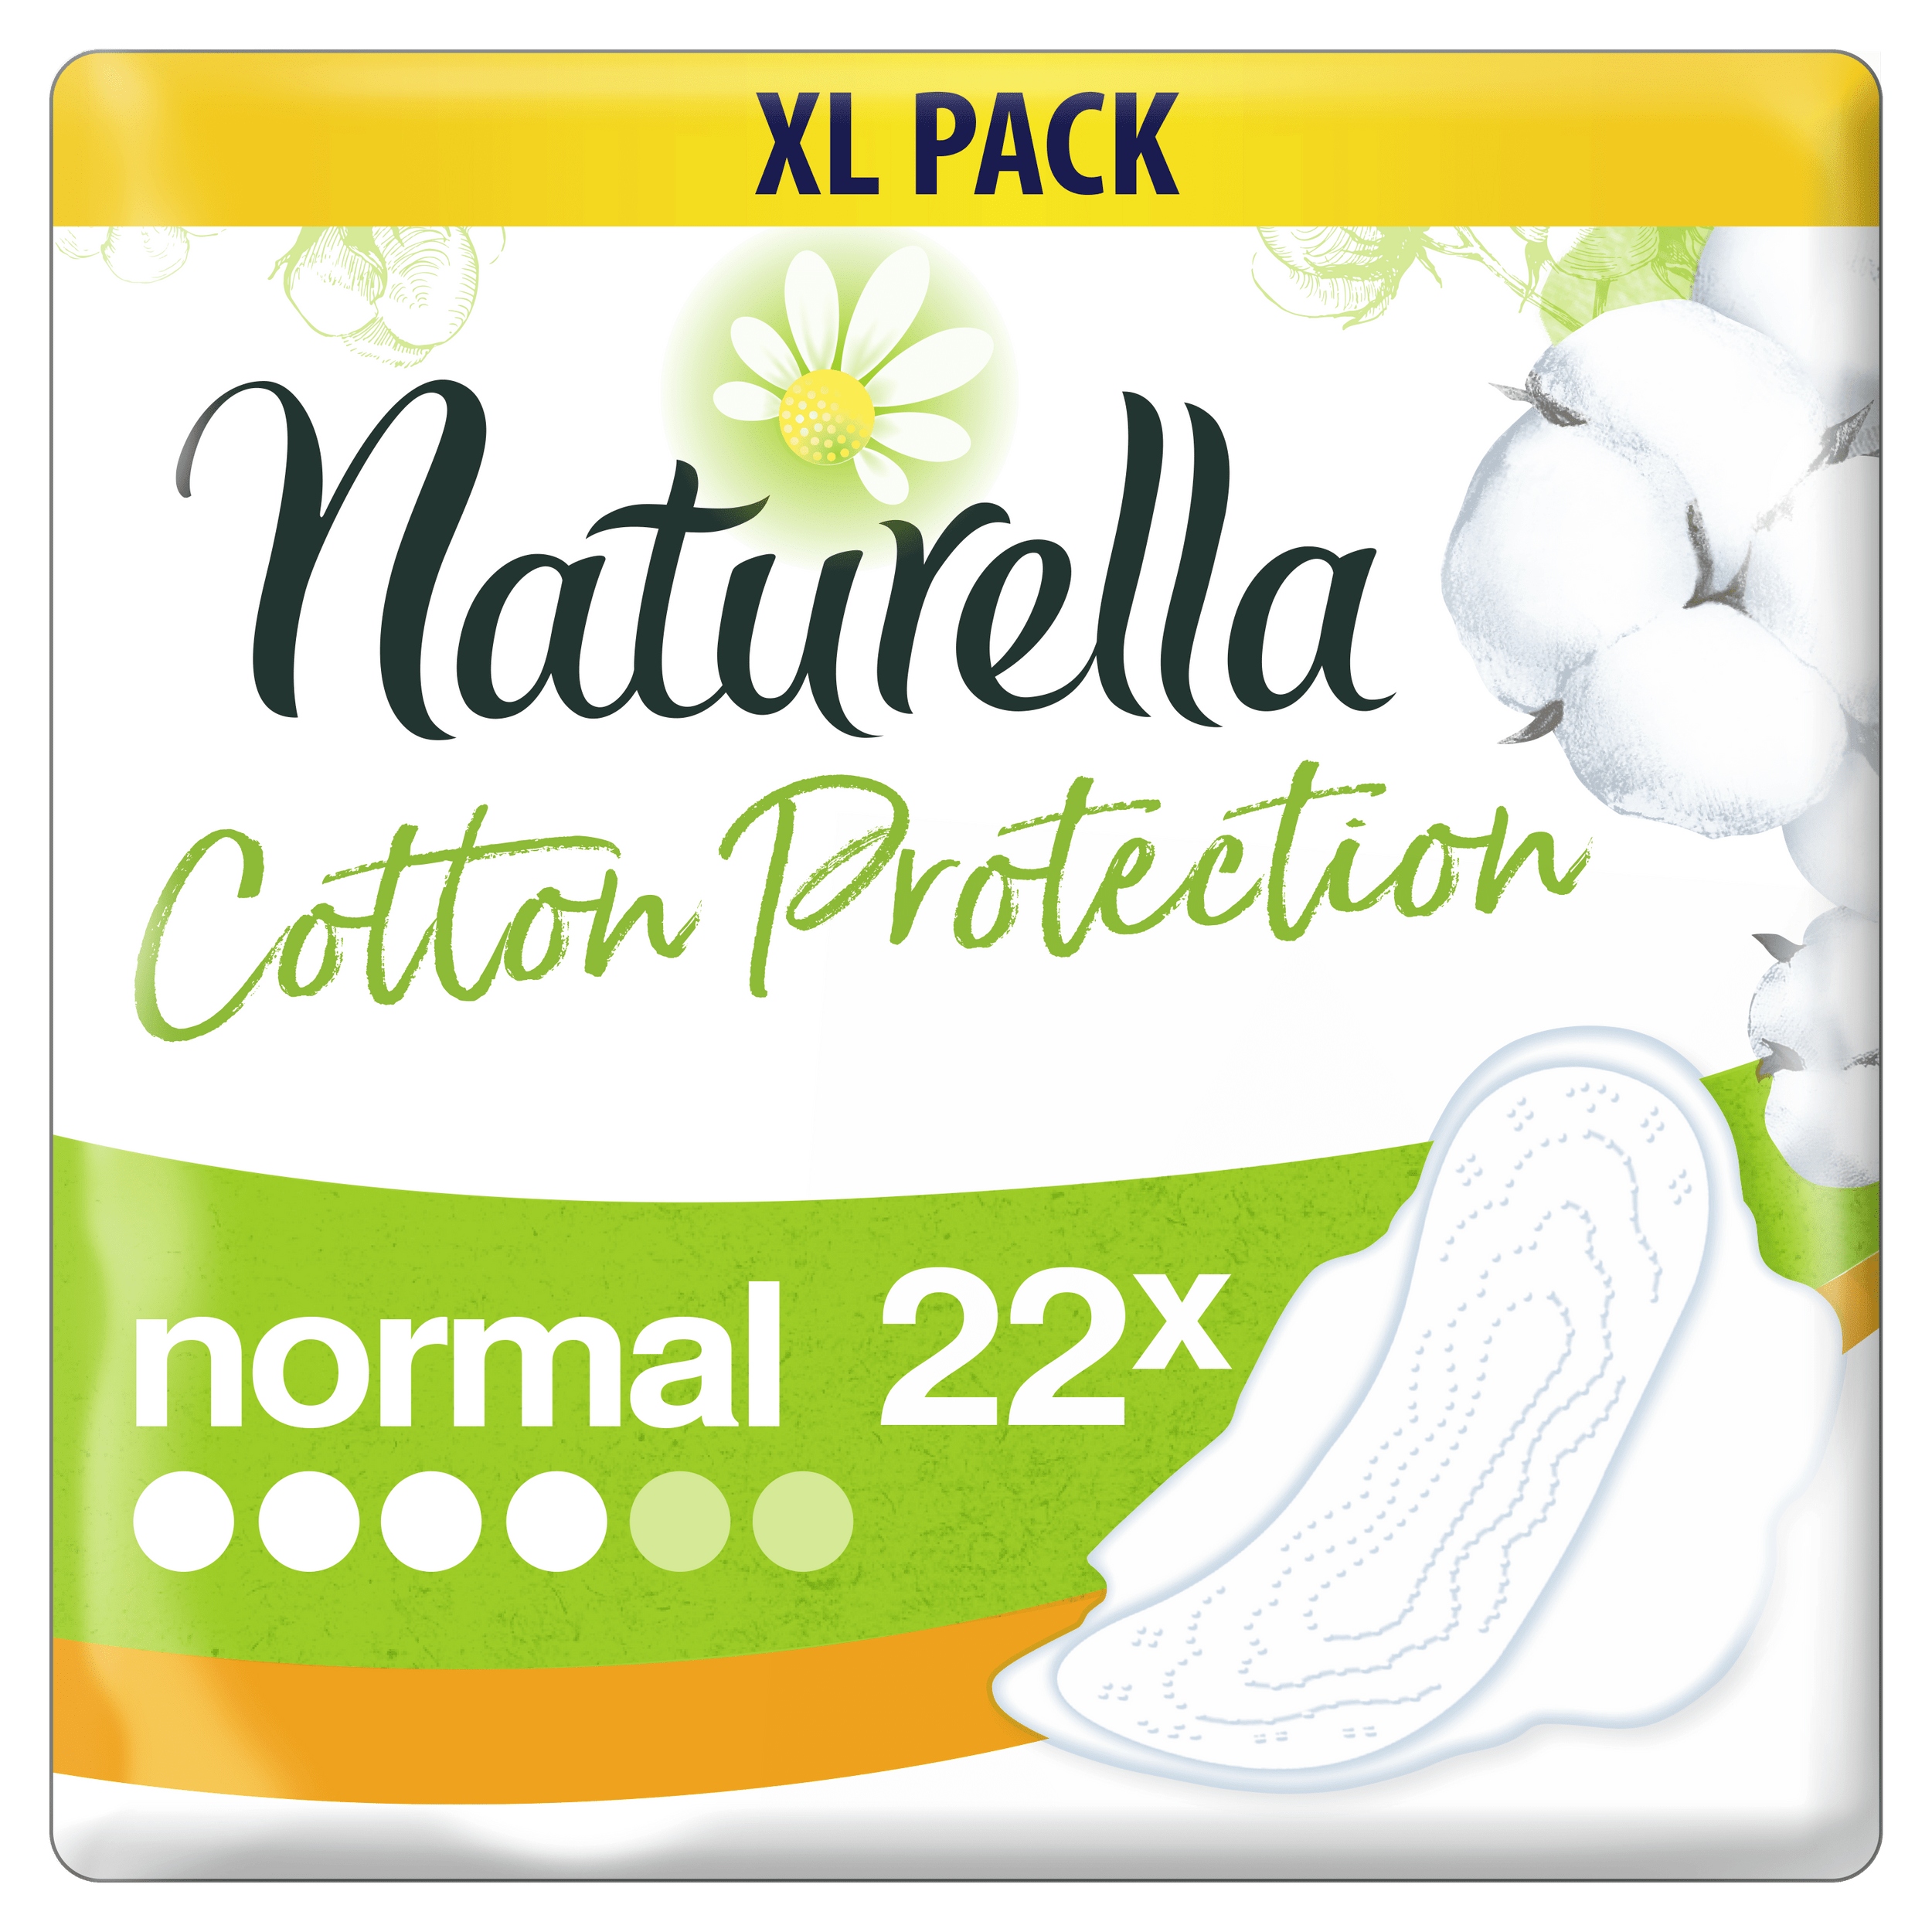 Promocja Naturella Cotton Ultra Normal Podpaski 22 sztuki wyprzedaż przecena